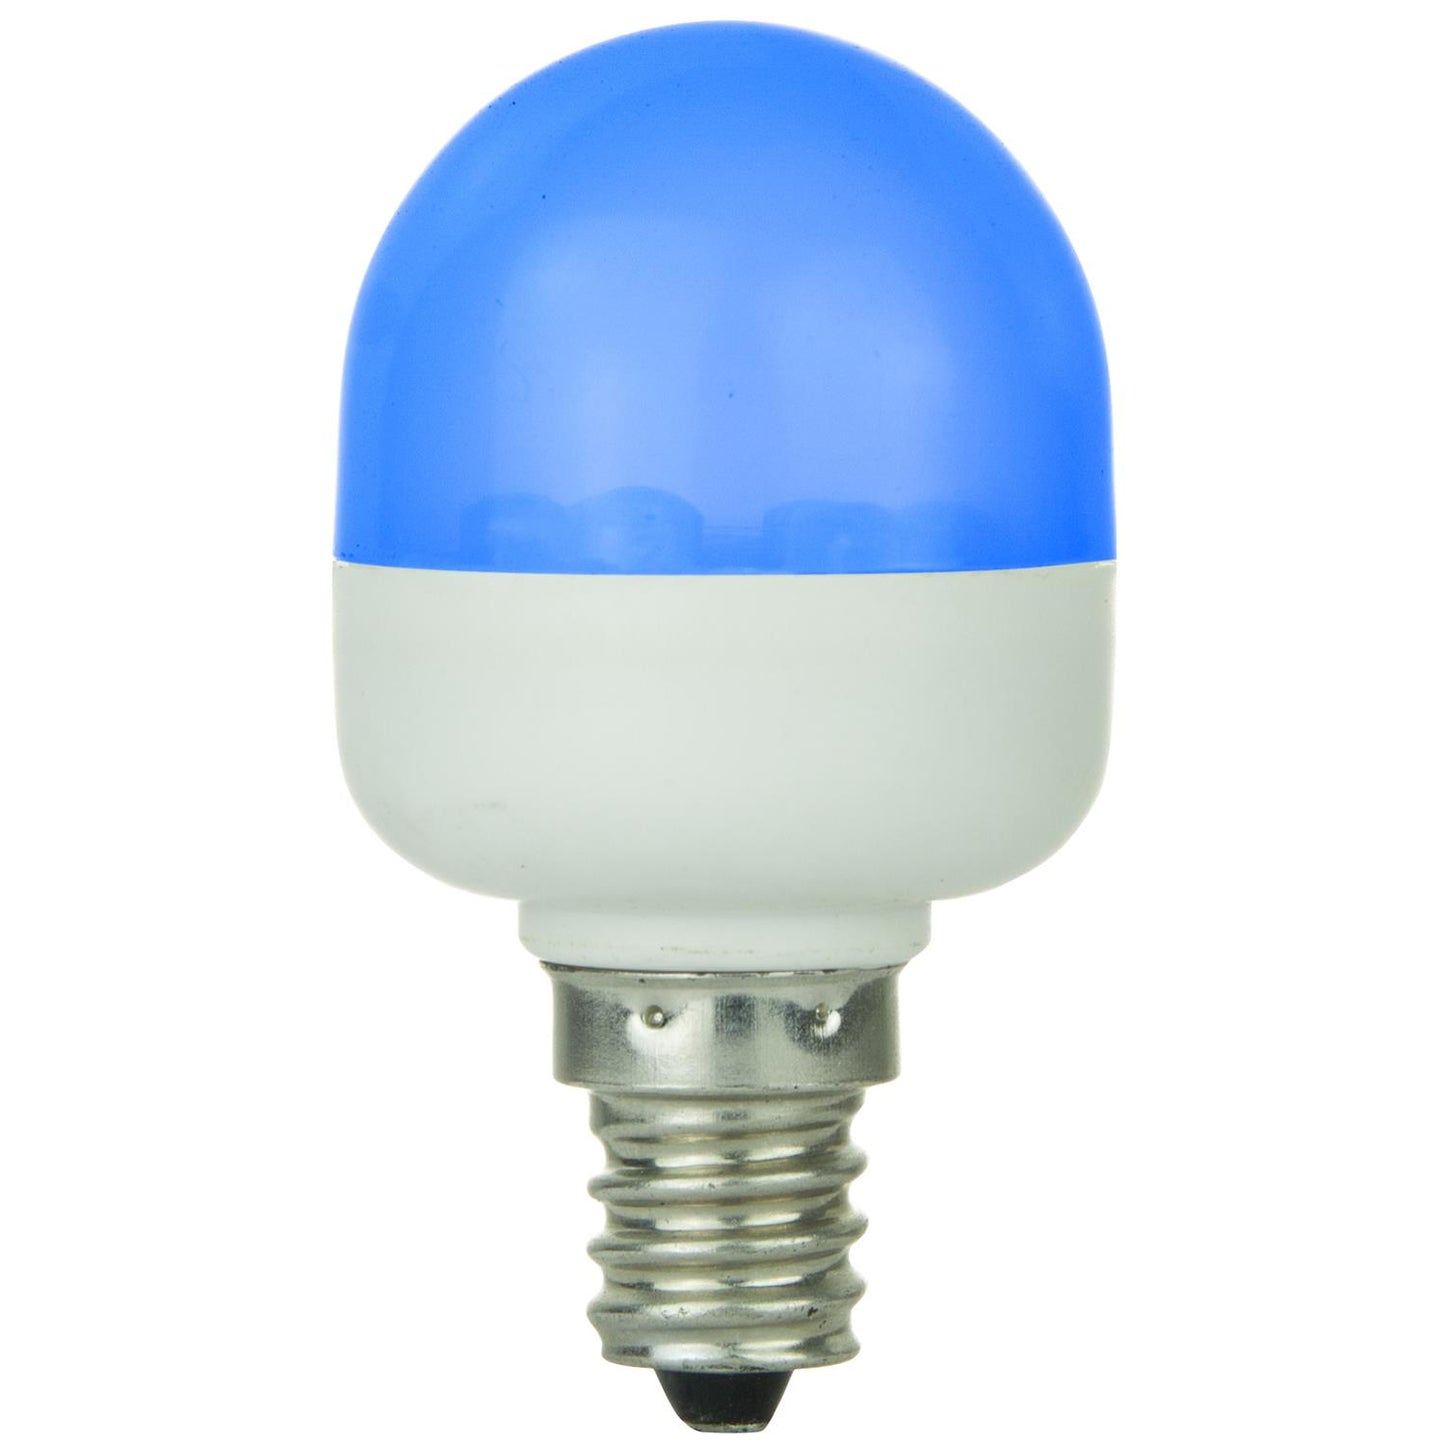 Sunlite T10 Tubular Indicator, Candelabra Base Light Bulb, Blue